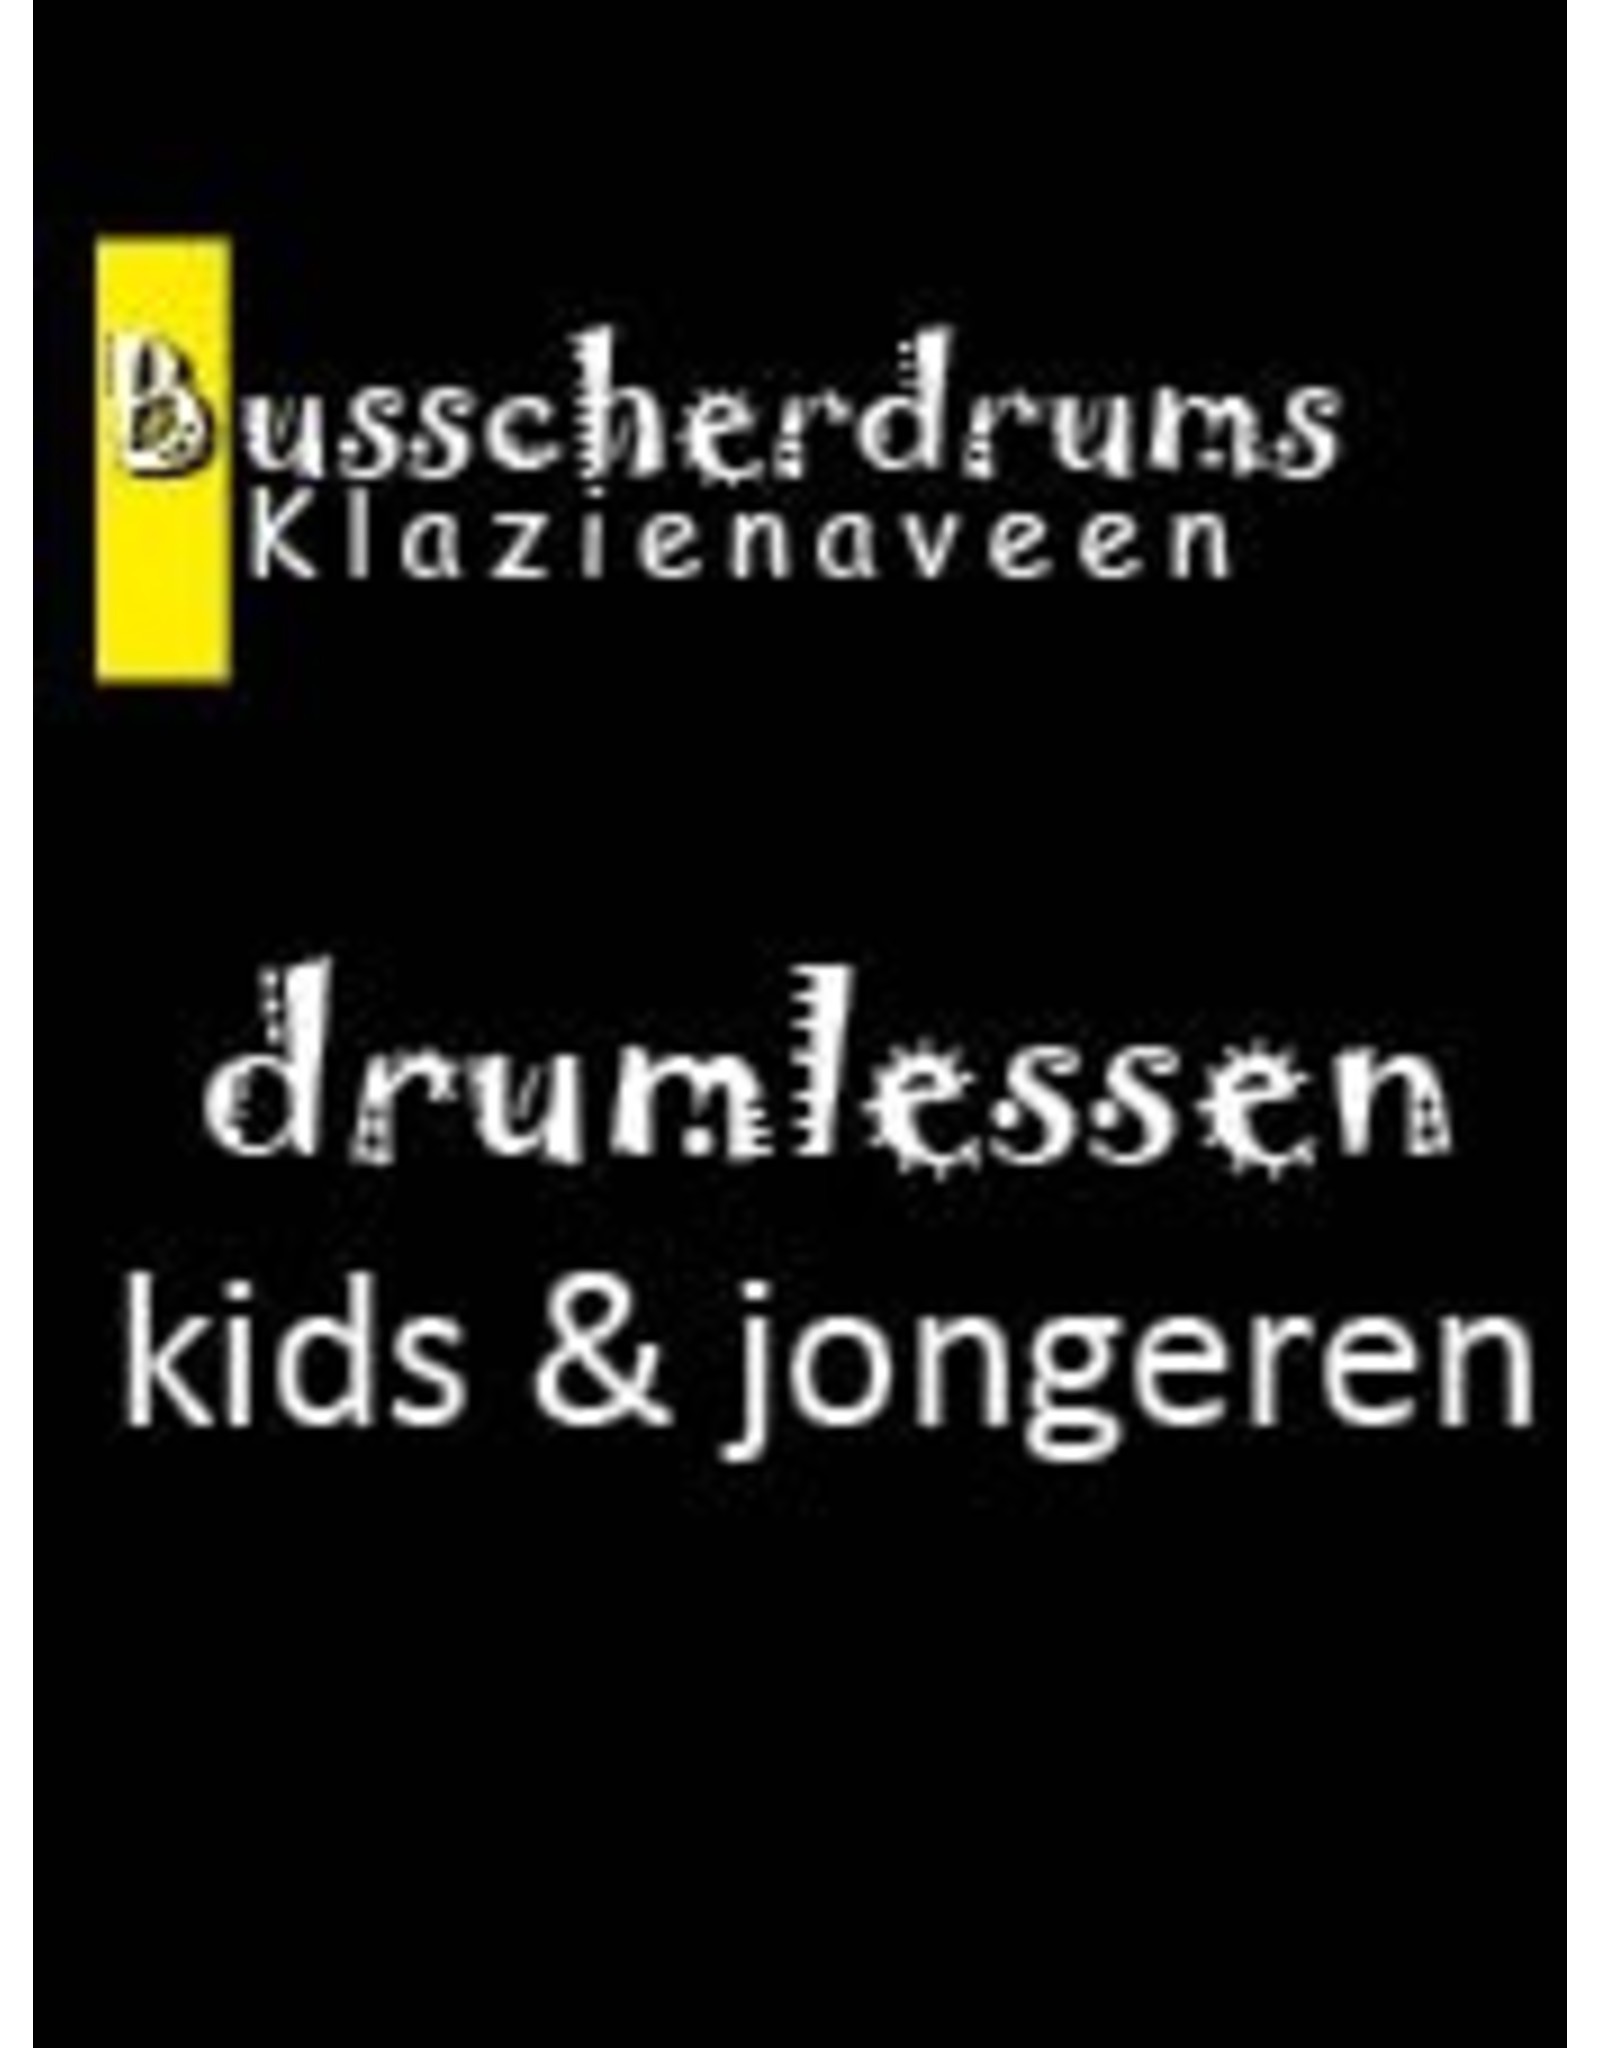 Busscherdrums Drum Lessons Monatskarte 20 Minuten wöchentlich Jugend 101